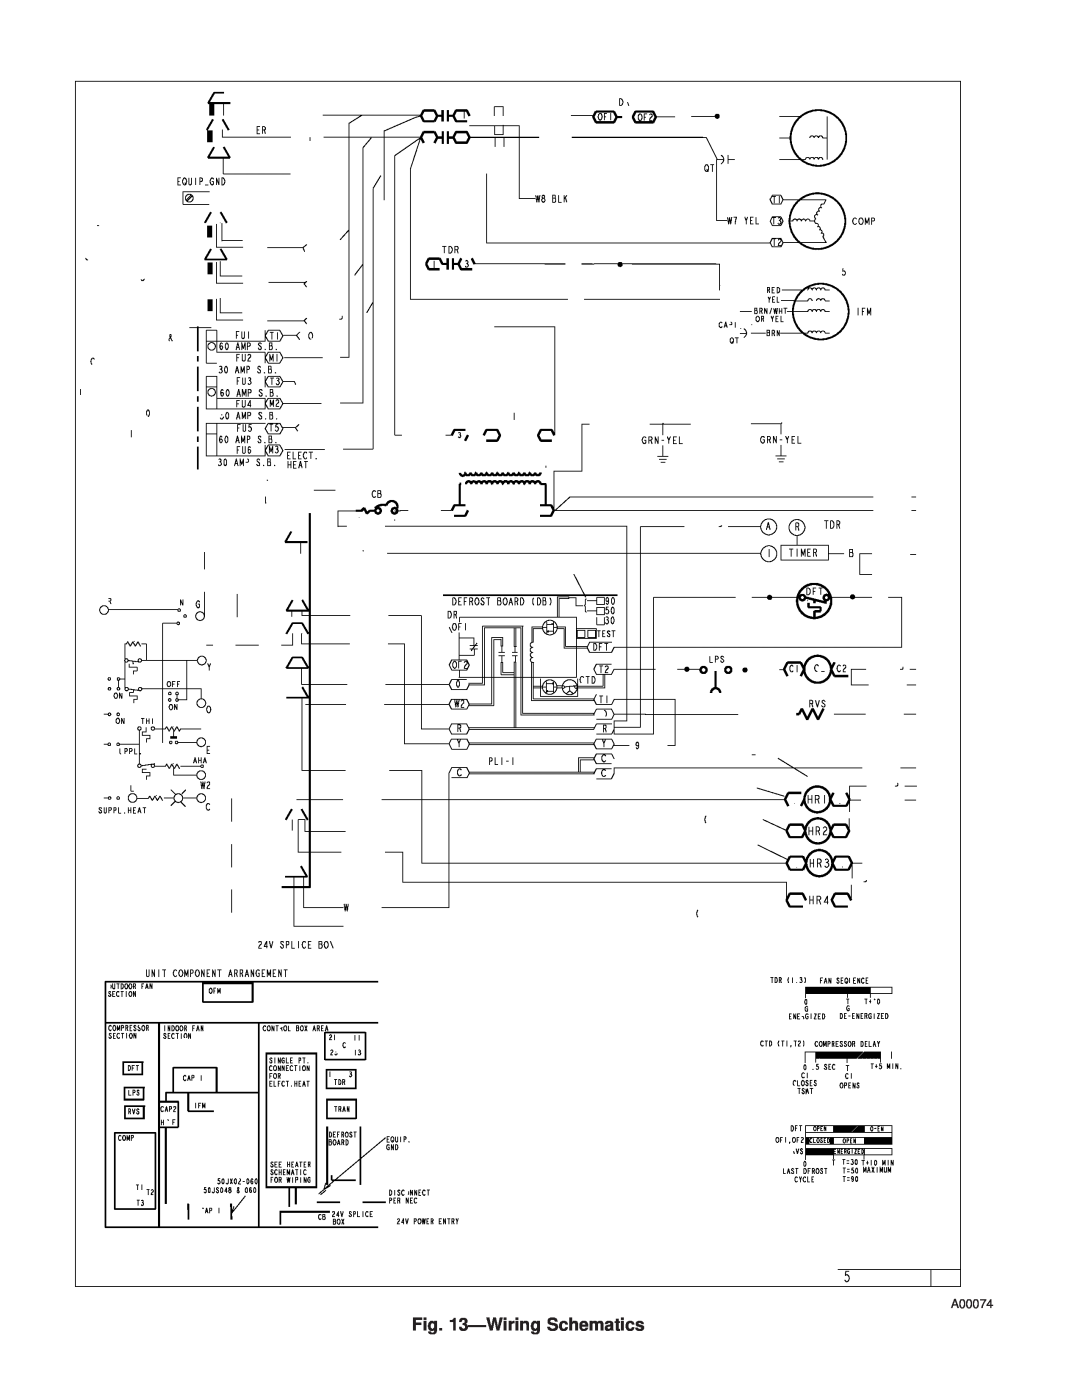 Carrier 50JS instruction manual ÐWiring Schematics, A00074 